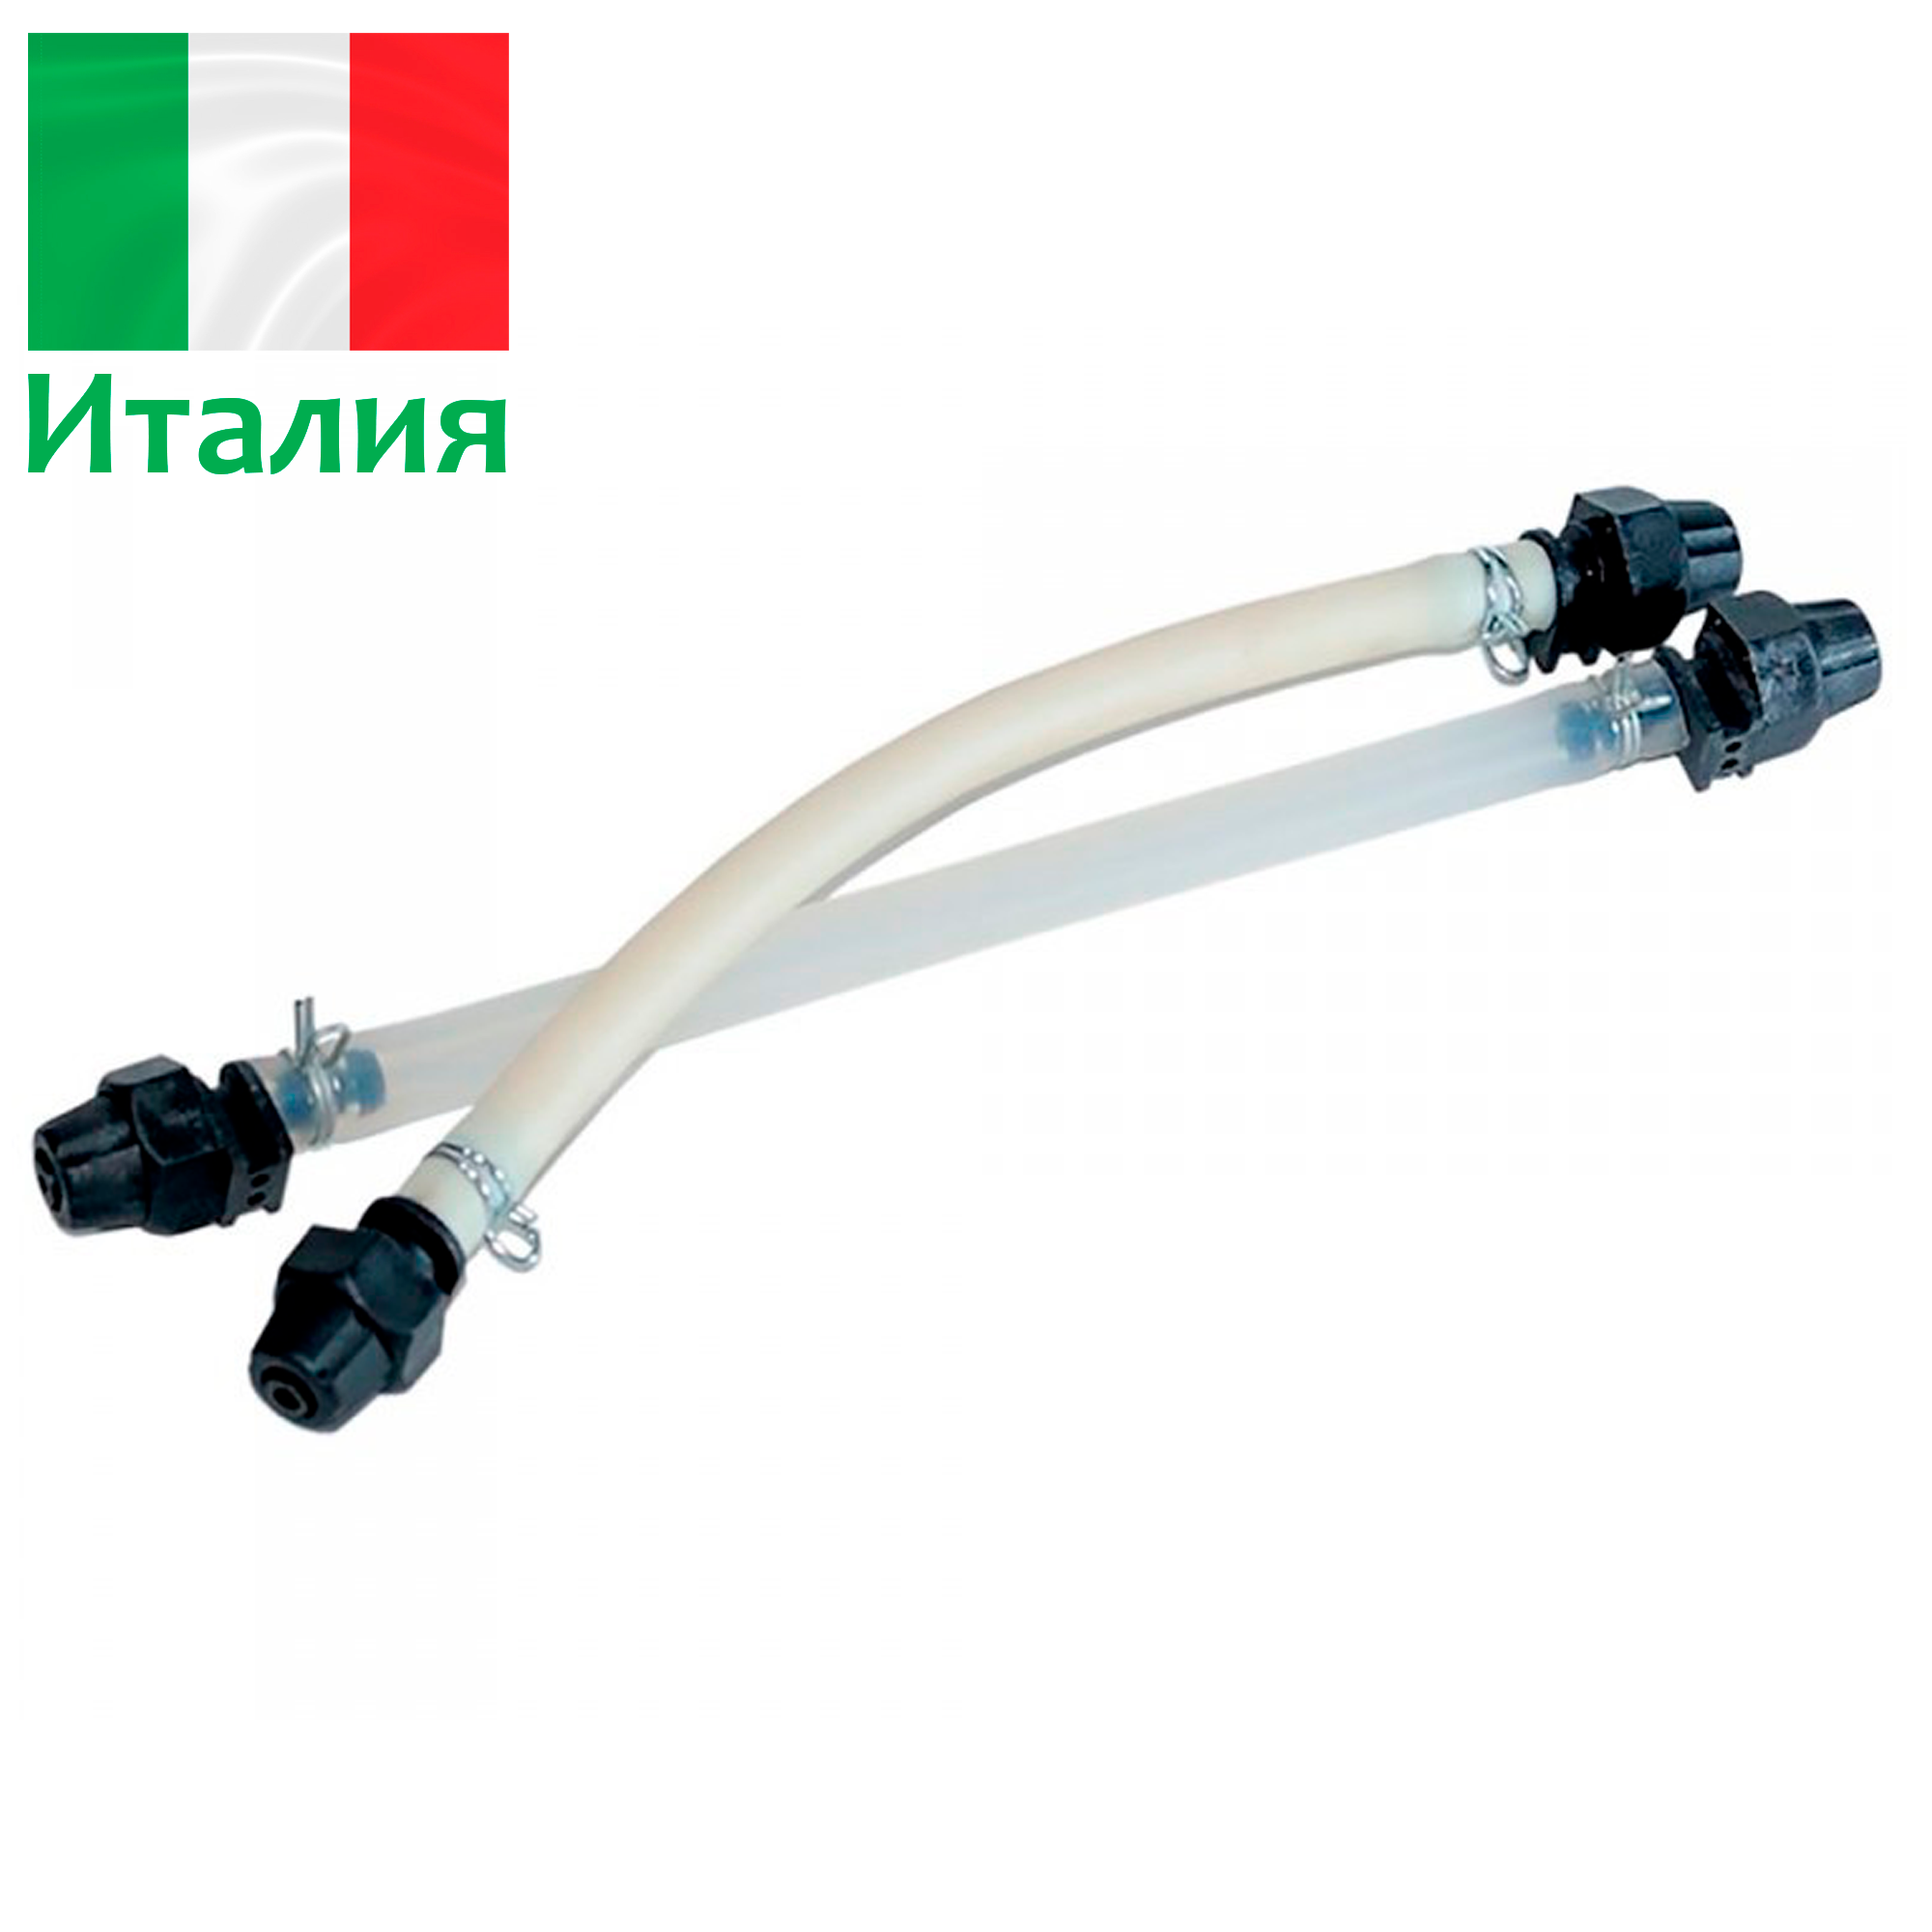 Шланг (трубка) для перистальтических дозирующих насосов B3-V/eMyPool - 2-3-4 л/ч - d 4.8 x 9.6 мм - RTU0001301, Etatron, Италия